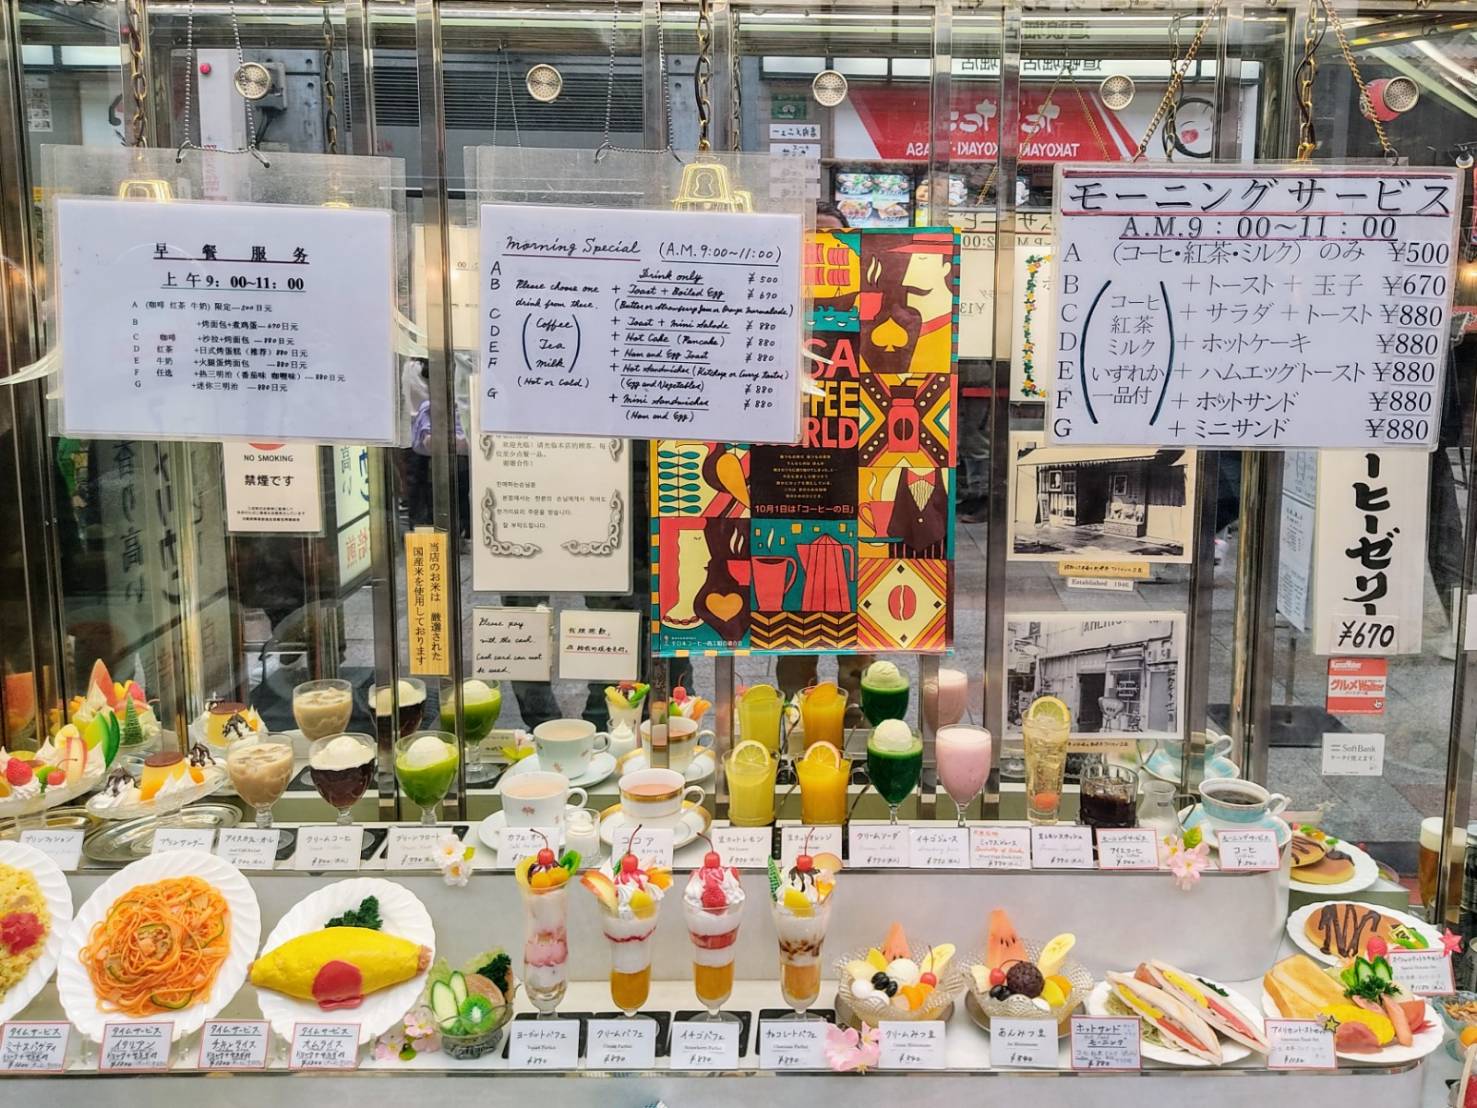 food display at Junkissa American